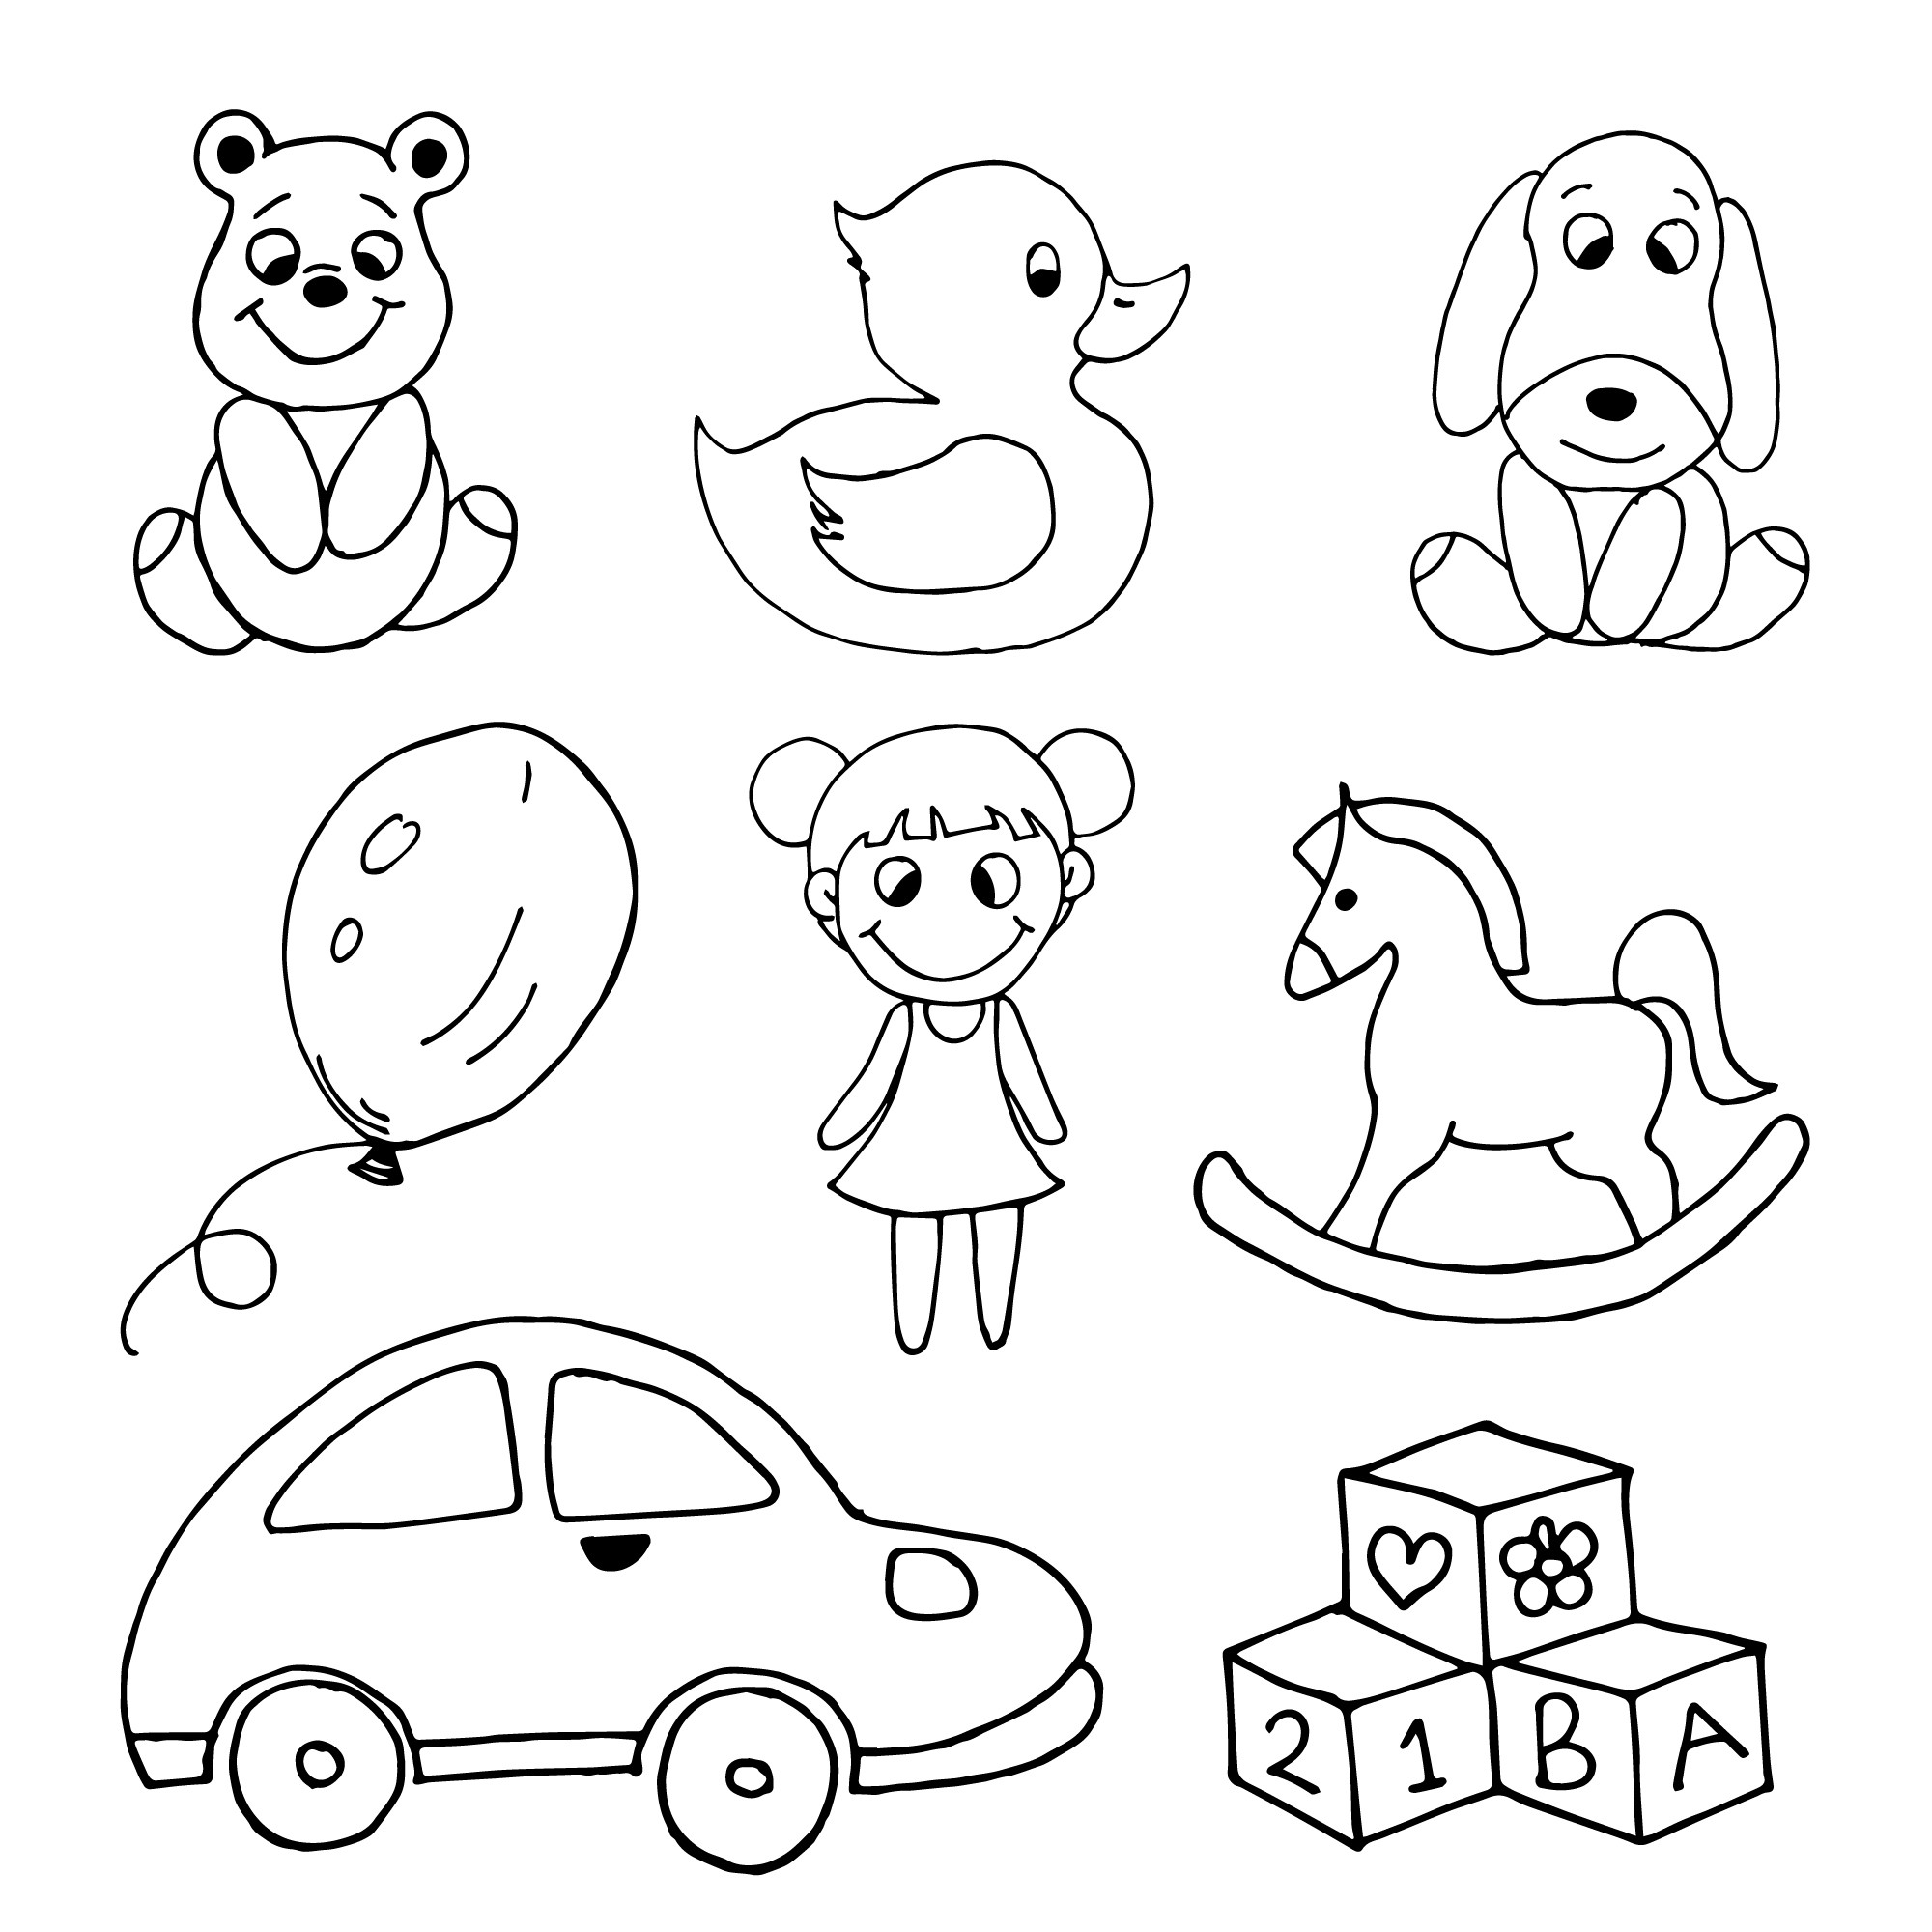 Раскраска для детей: детские игрушки, кукла, лошадь качалка, кубики, машинка, уточка, шарик, собачка